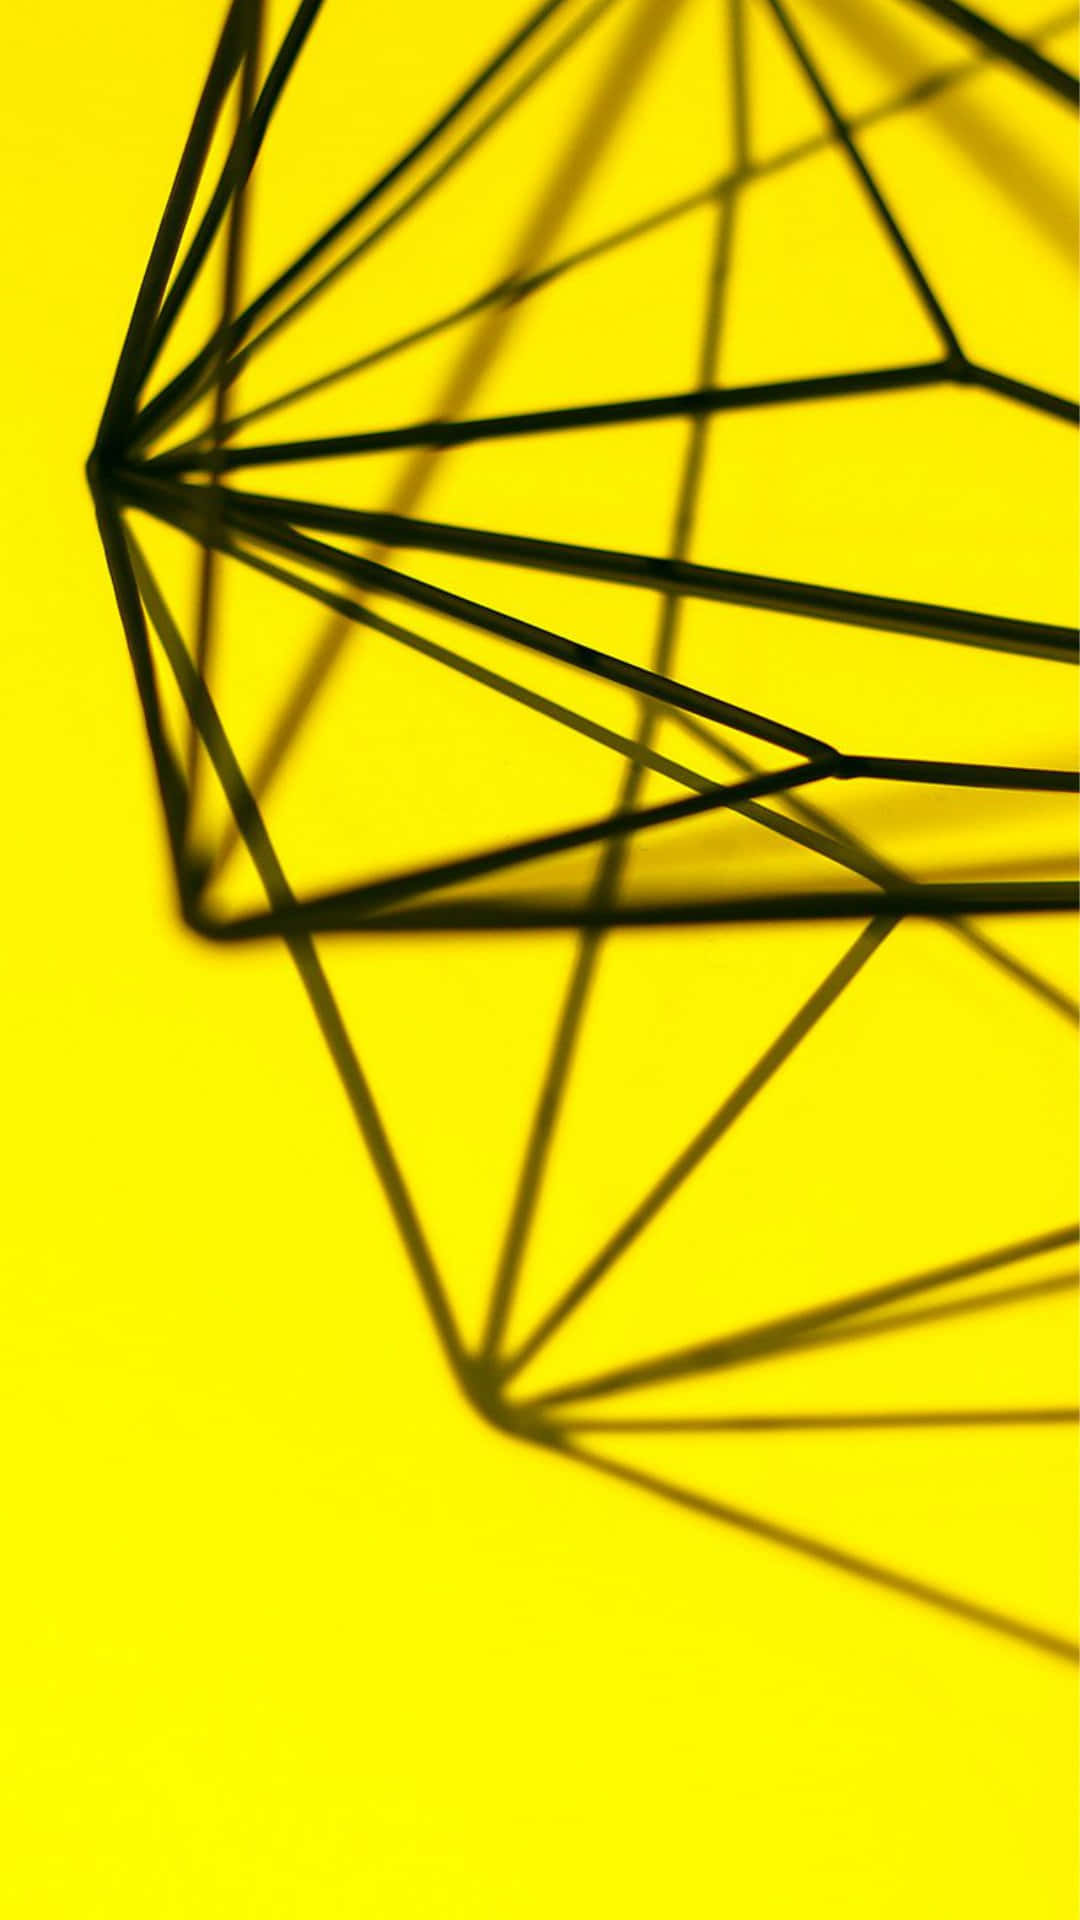 Eineschwarze Und Gelbe Geometrische Form Auf Gelbem Hintergrund